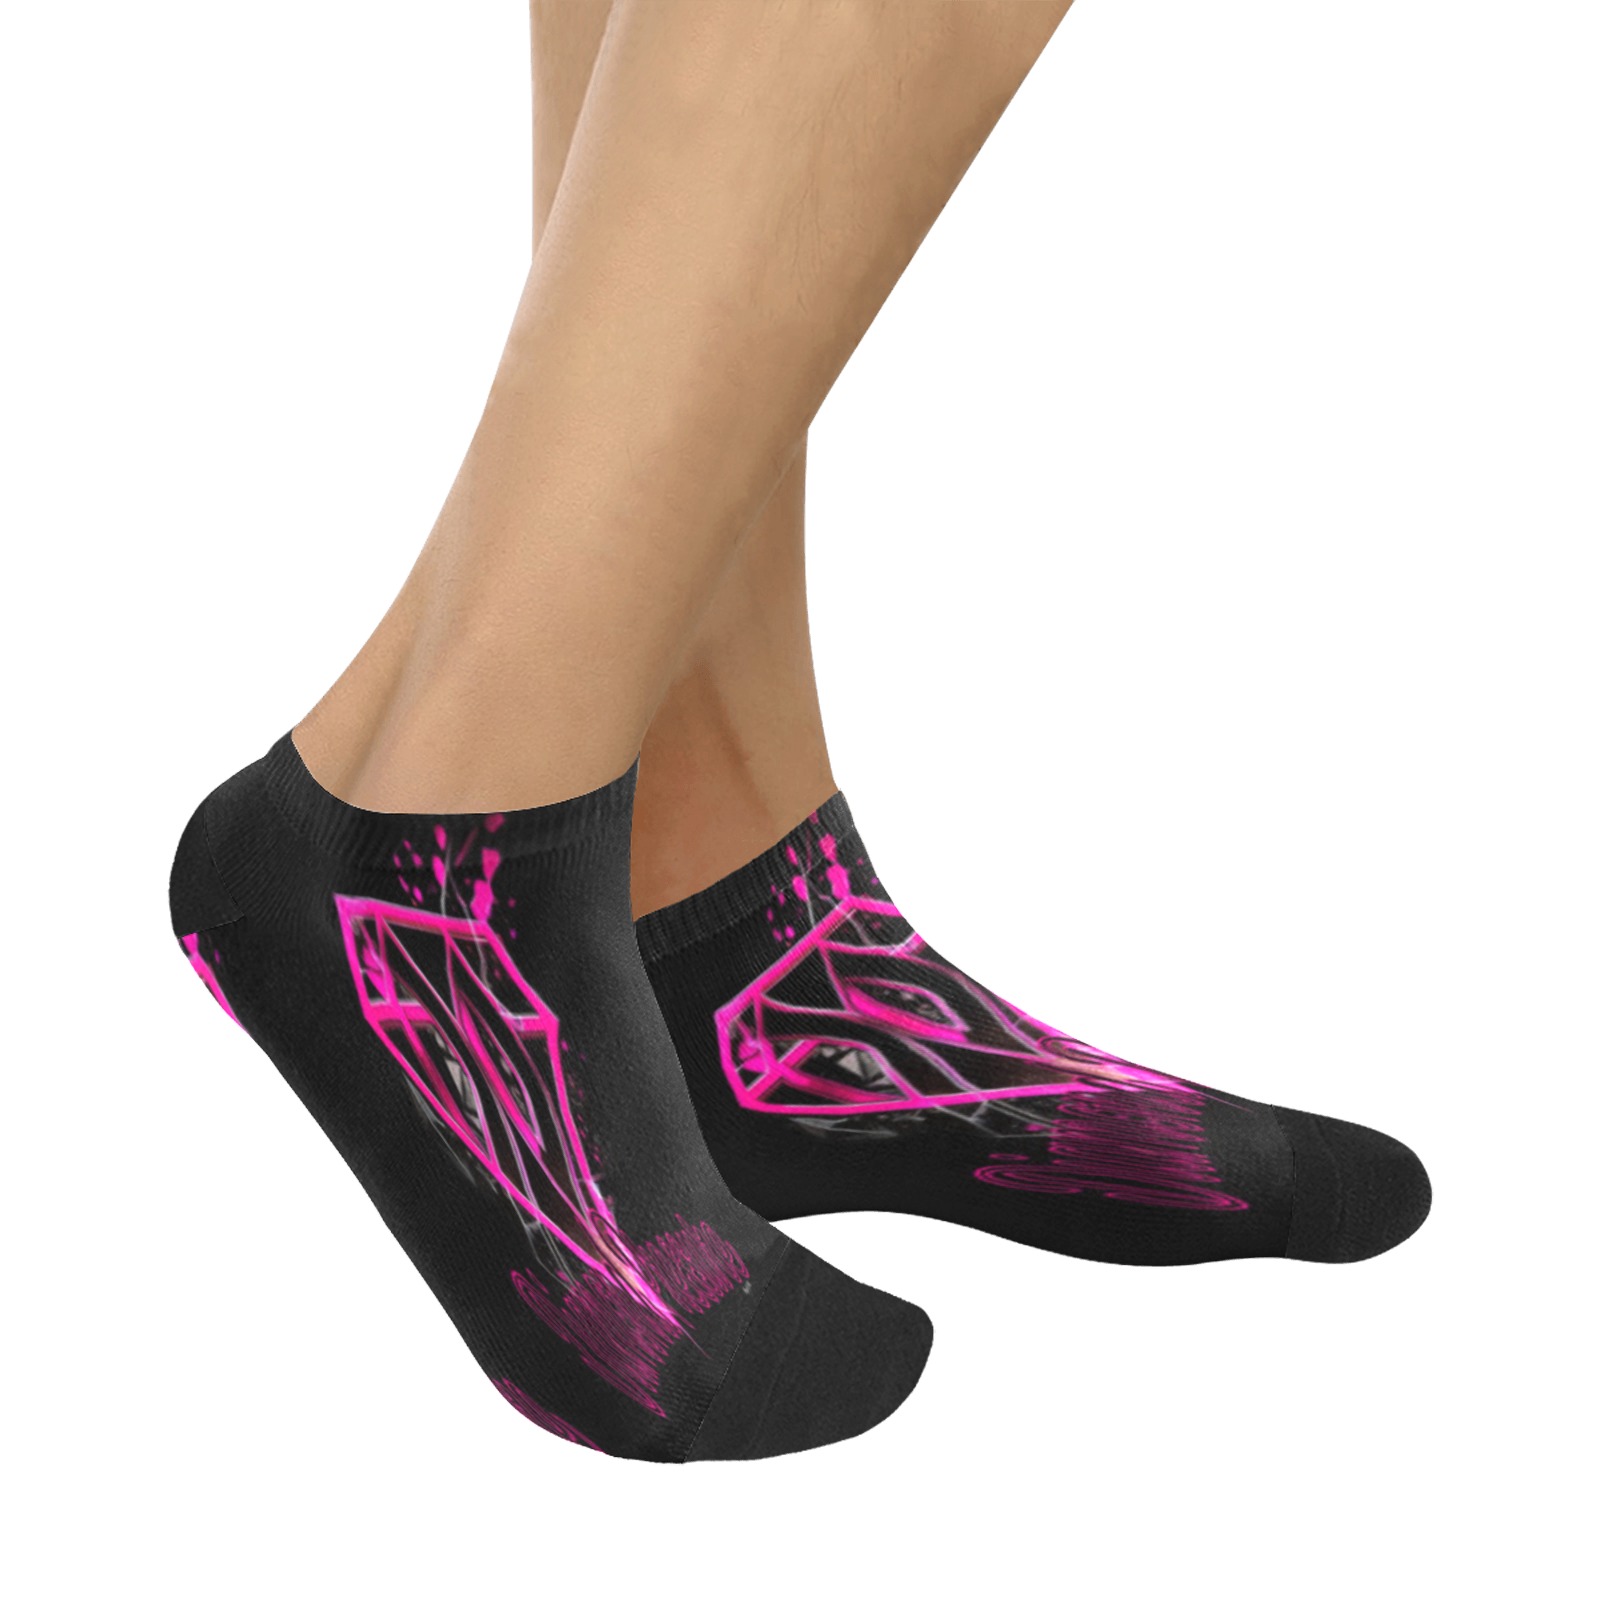 C8D35426-E53C-498A-8EA6-A0B7A649A6BC Women's Ankle Socks